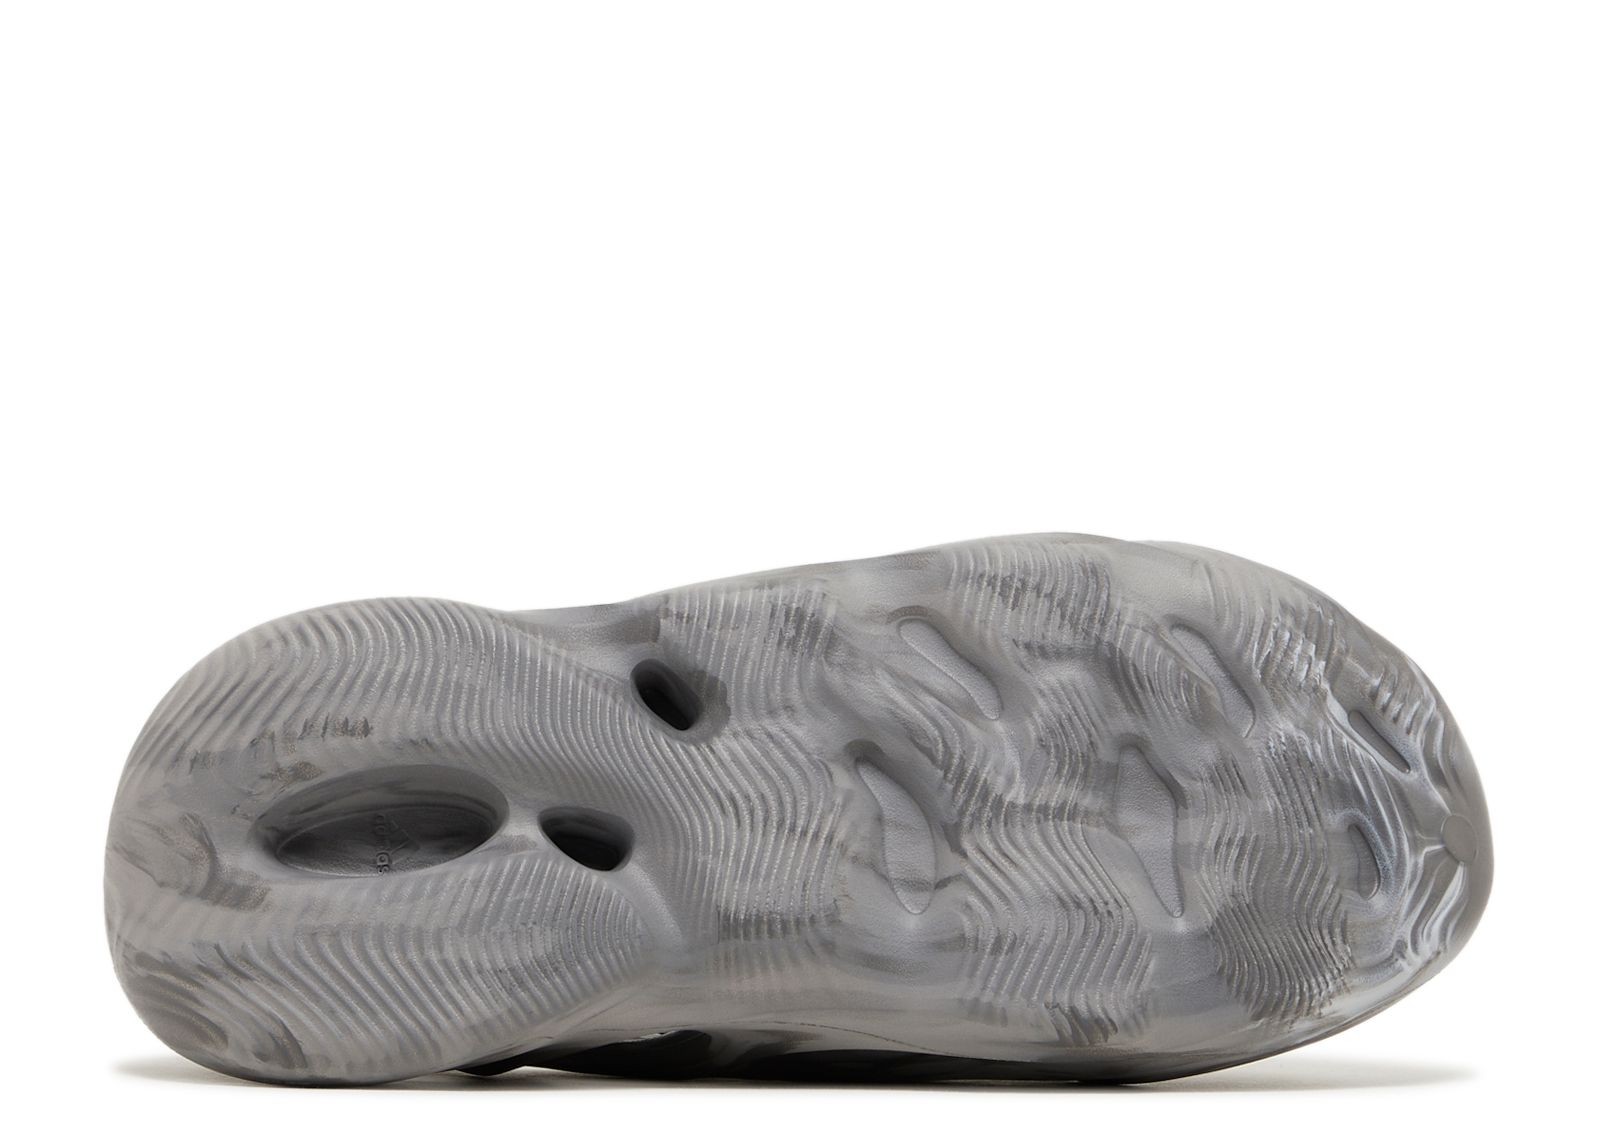 Yeezy Foam Runner MX Granite Grey Mens Multi Sizes IE4931 Rare